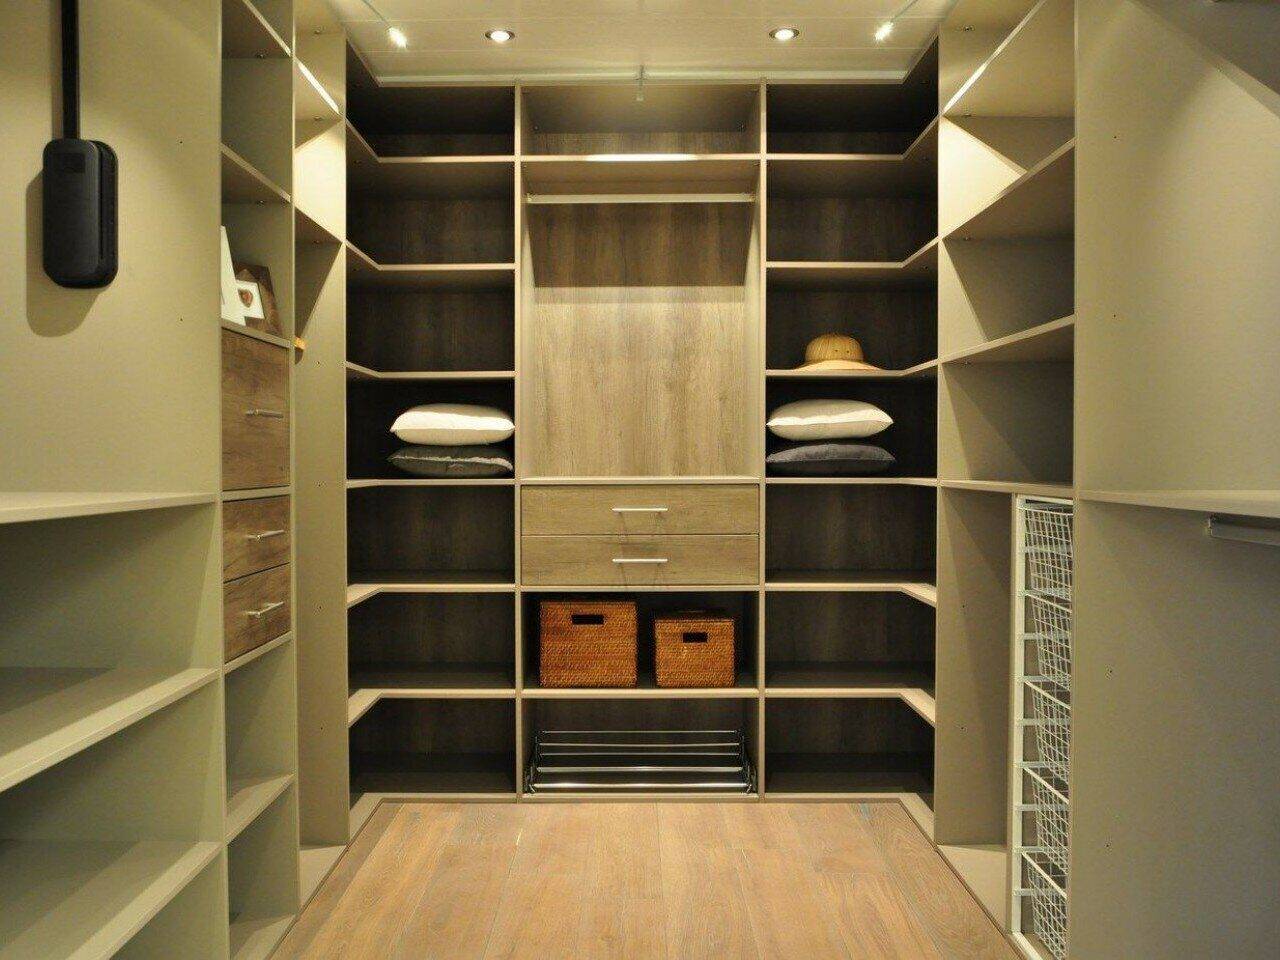 Дизайн гардеробной комнаты (25 фото): варианты внутреннего наполнения и отделки